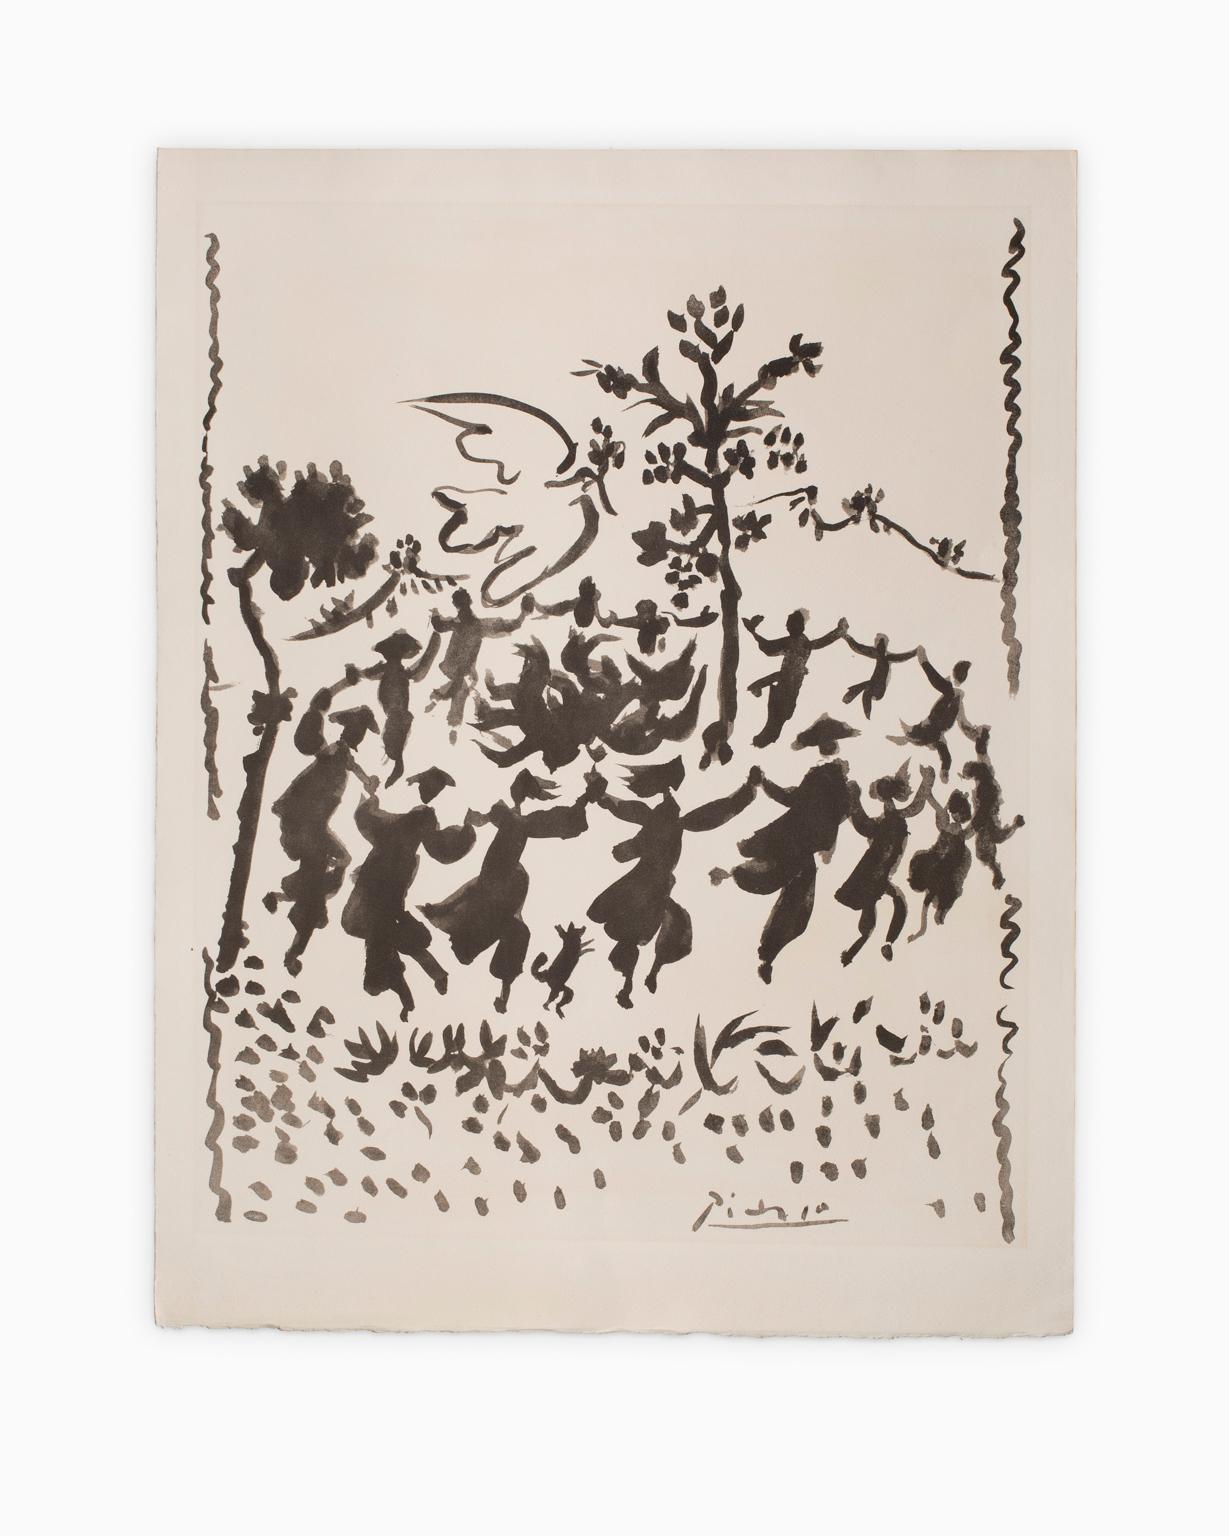 Pablo Picasso Figurative Print - "Vive le Paix (Long Live Peace)", Lithograph, Black on White, Dancing, Movement